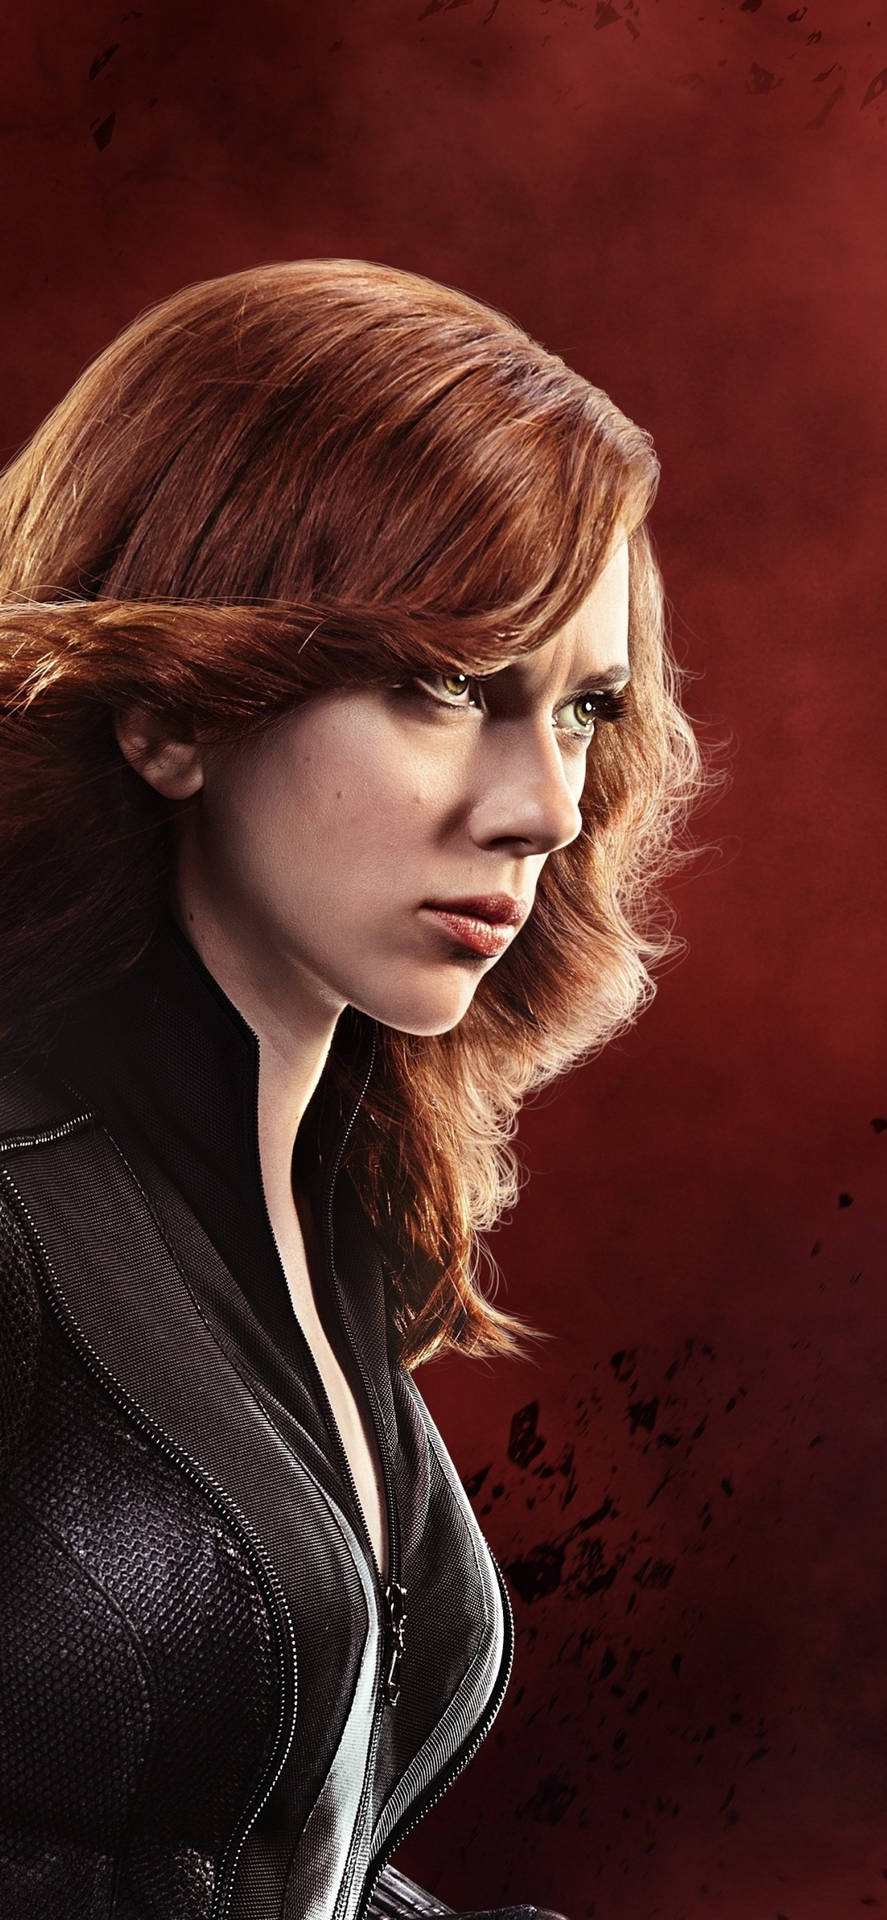 Scarlett Johansson As Black Widow Side Profile Wallpaper